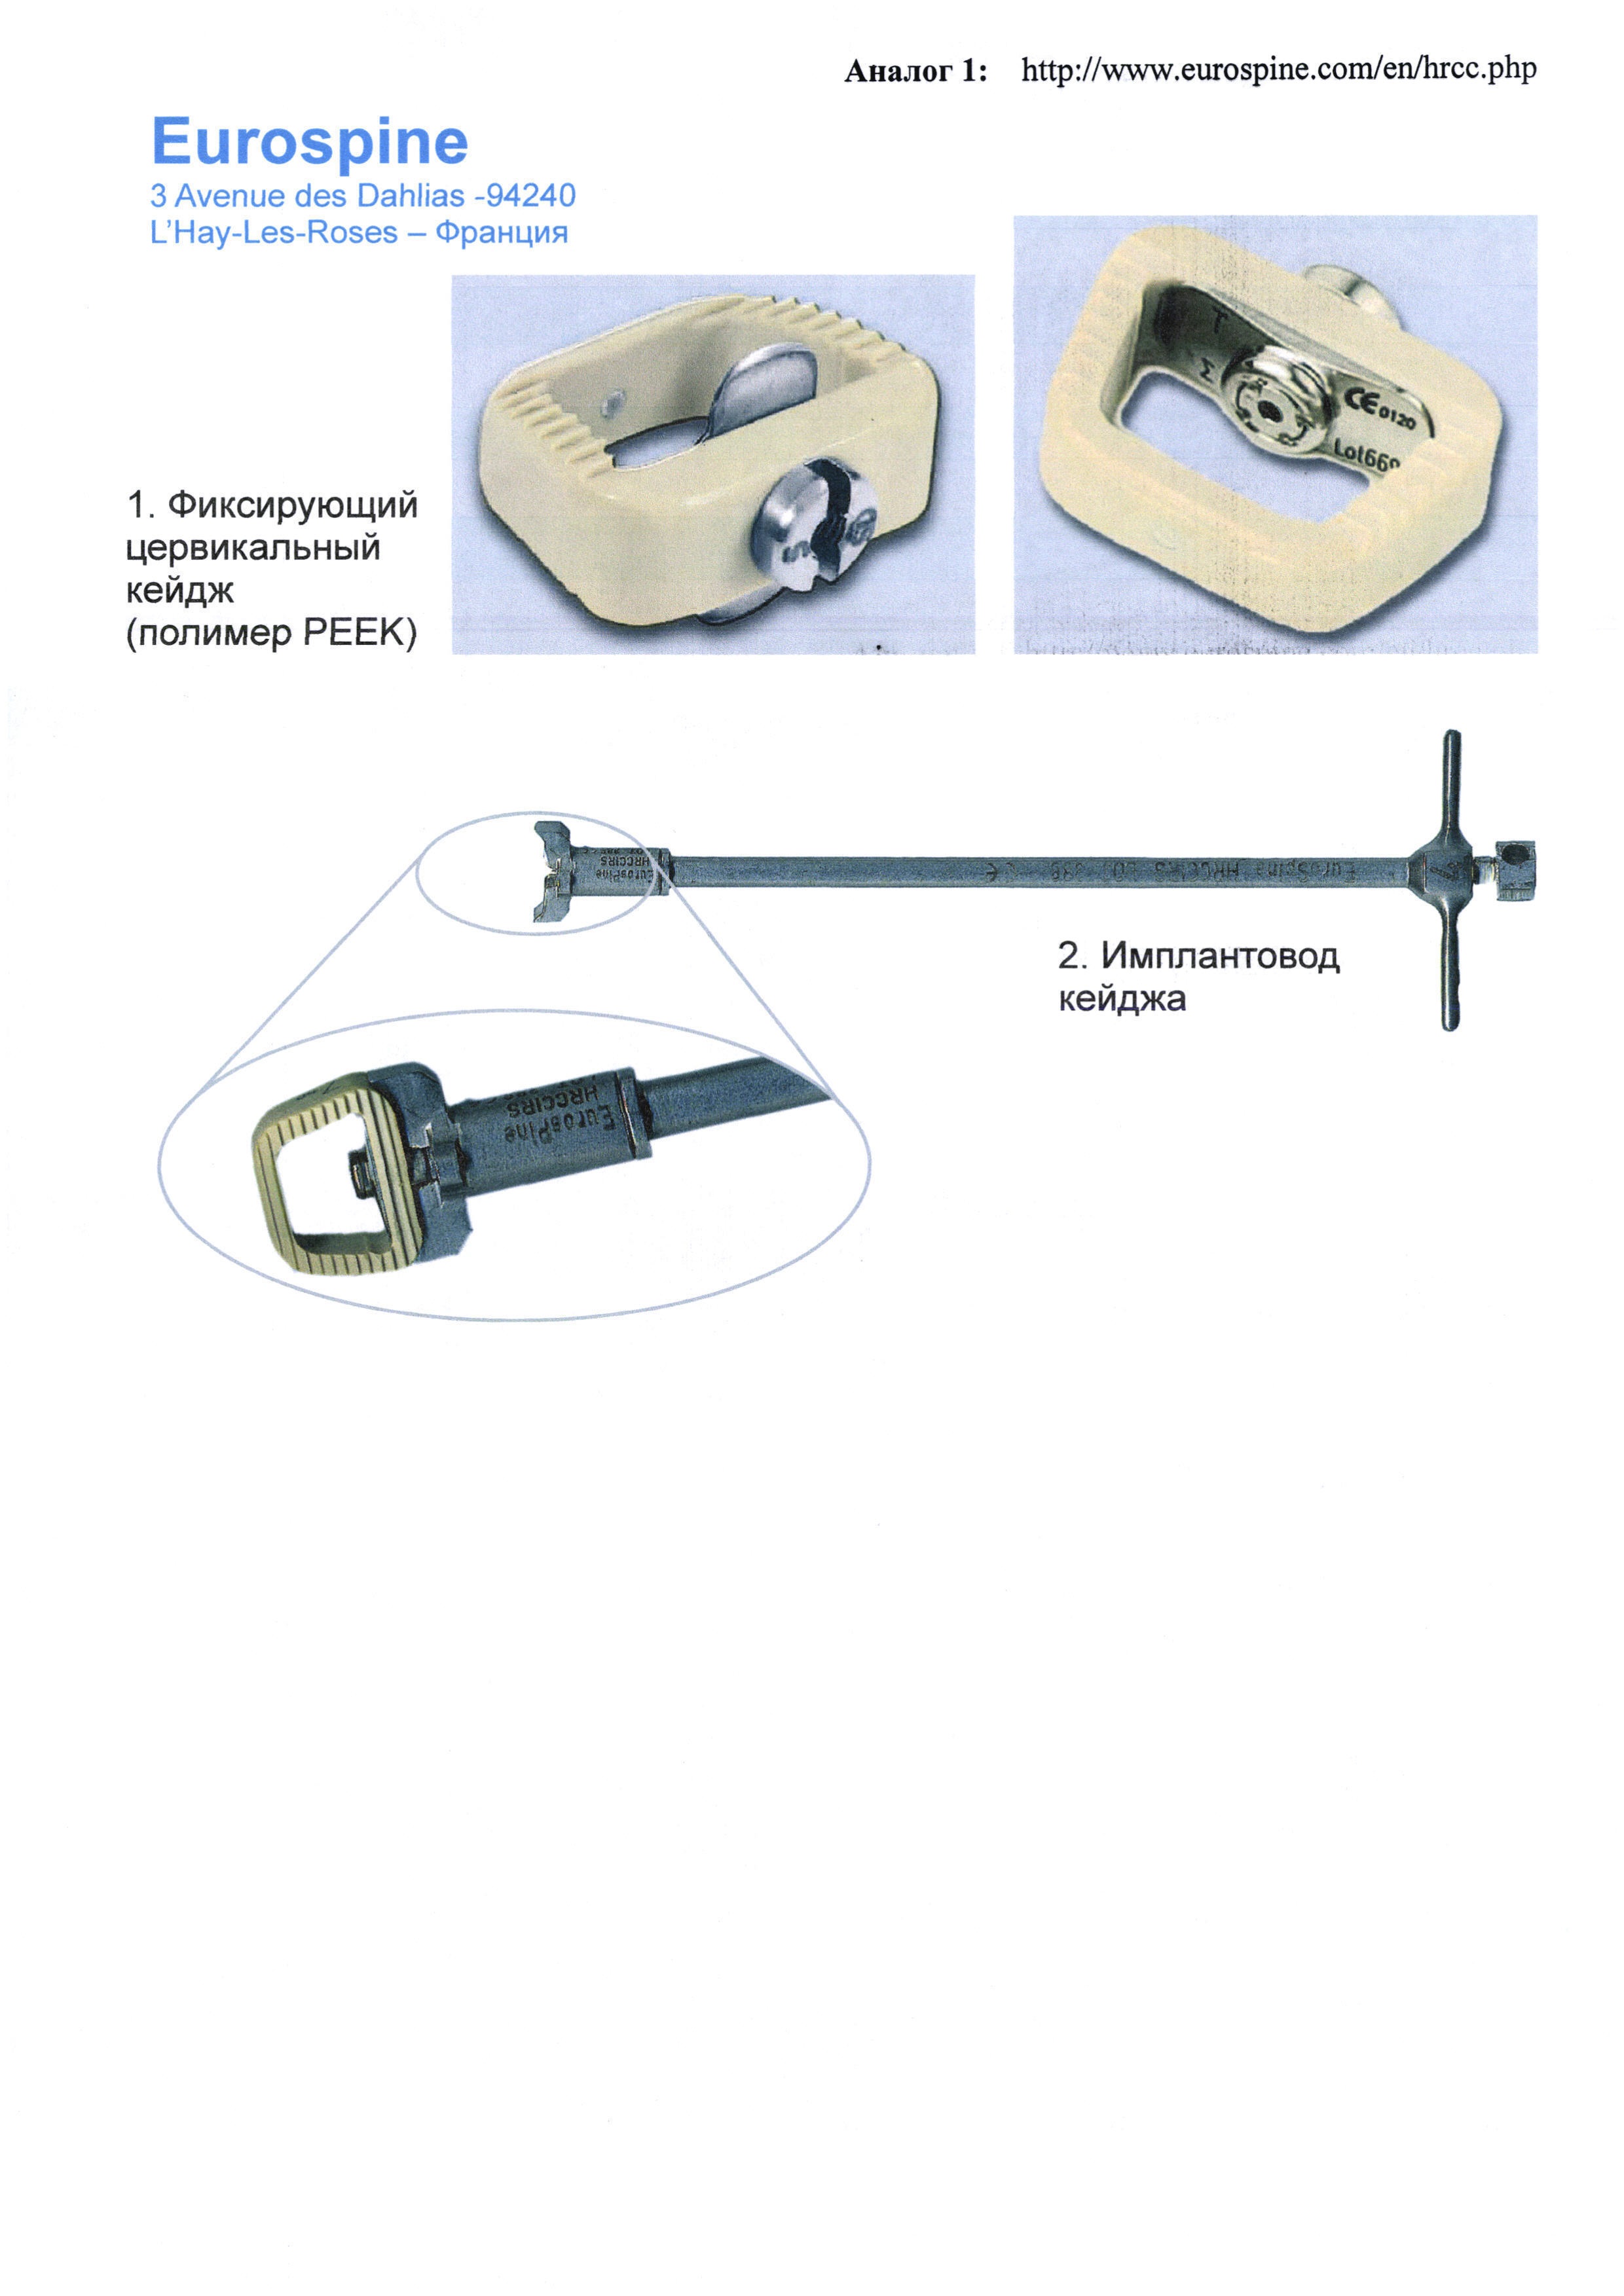 Имплантат для межтелового спондилодеза из пористого материала и имплантовод для его установки и удаления